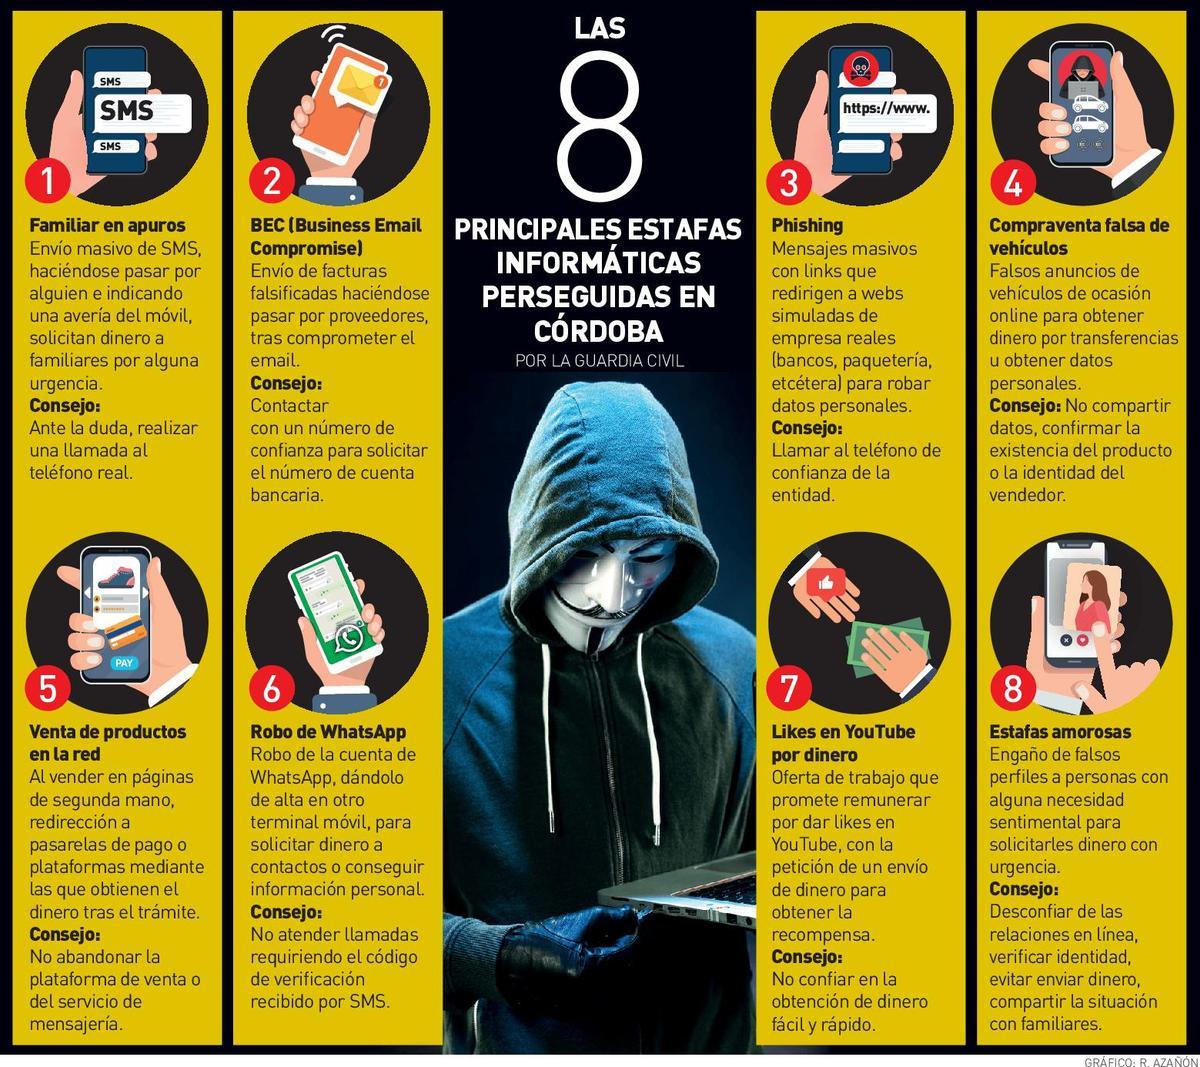 Las principales ciberestafas en Córdoba.